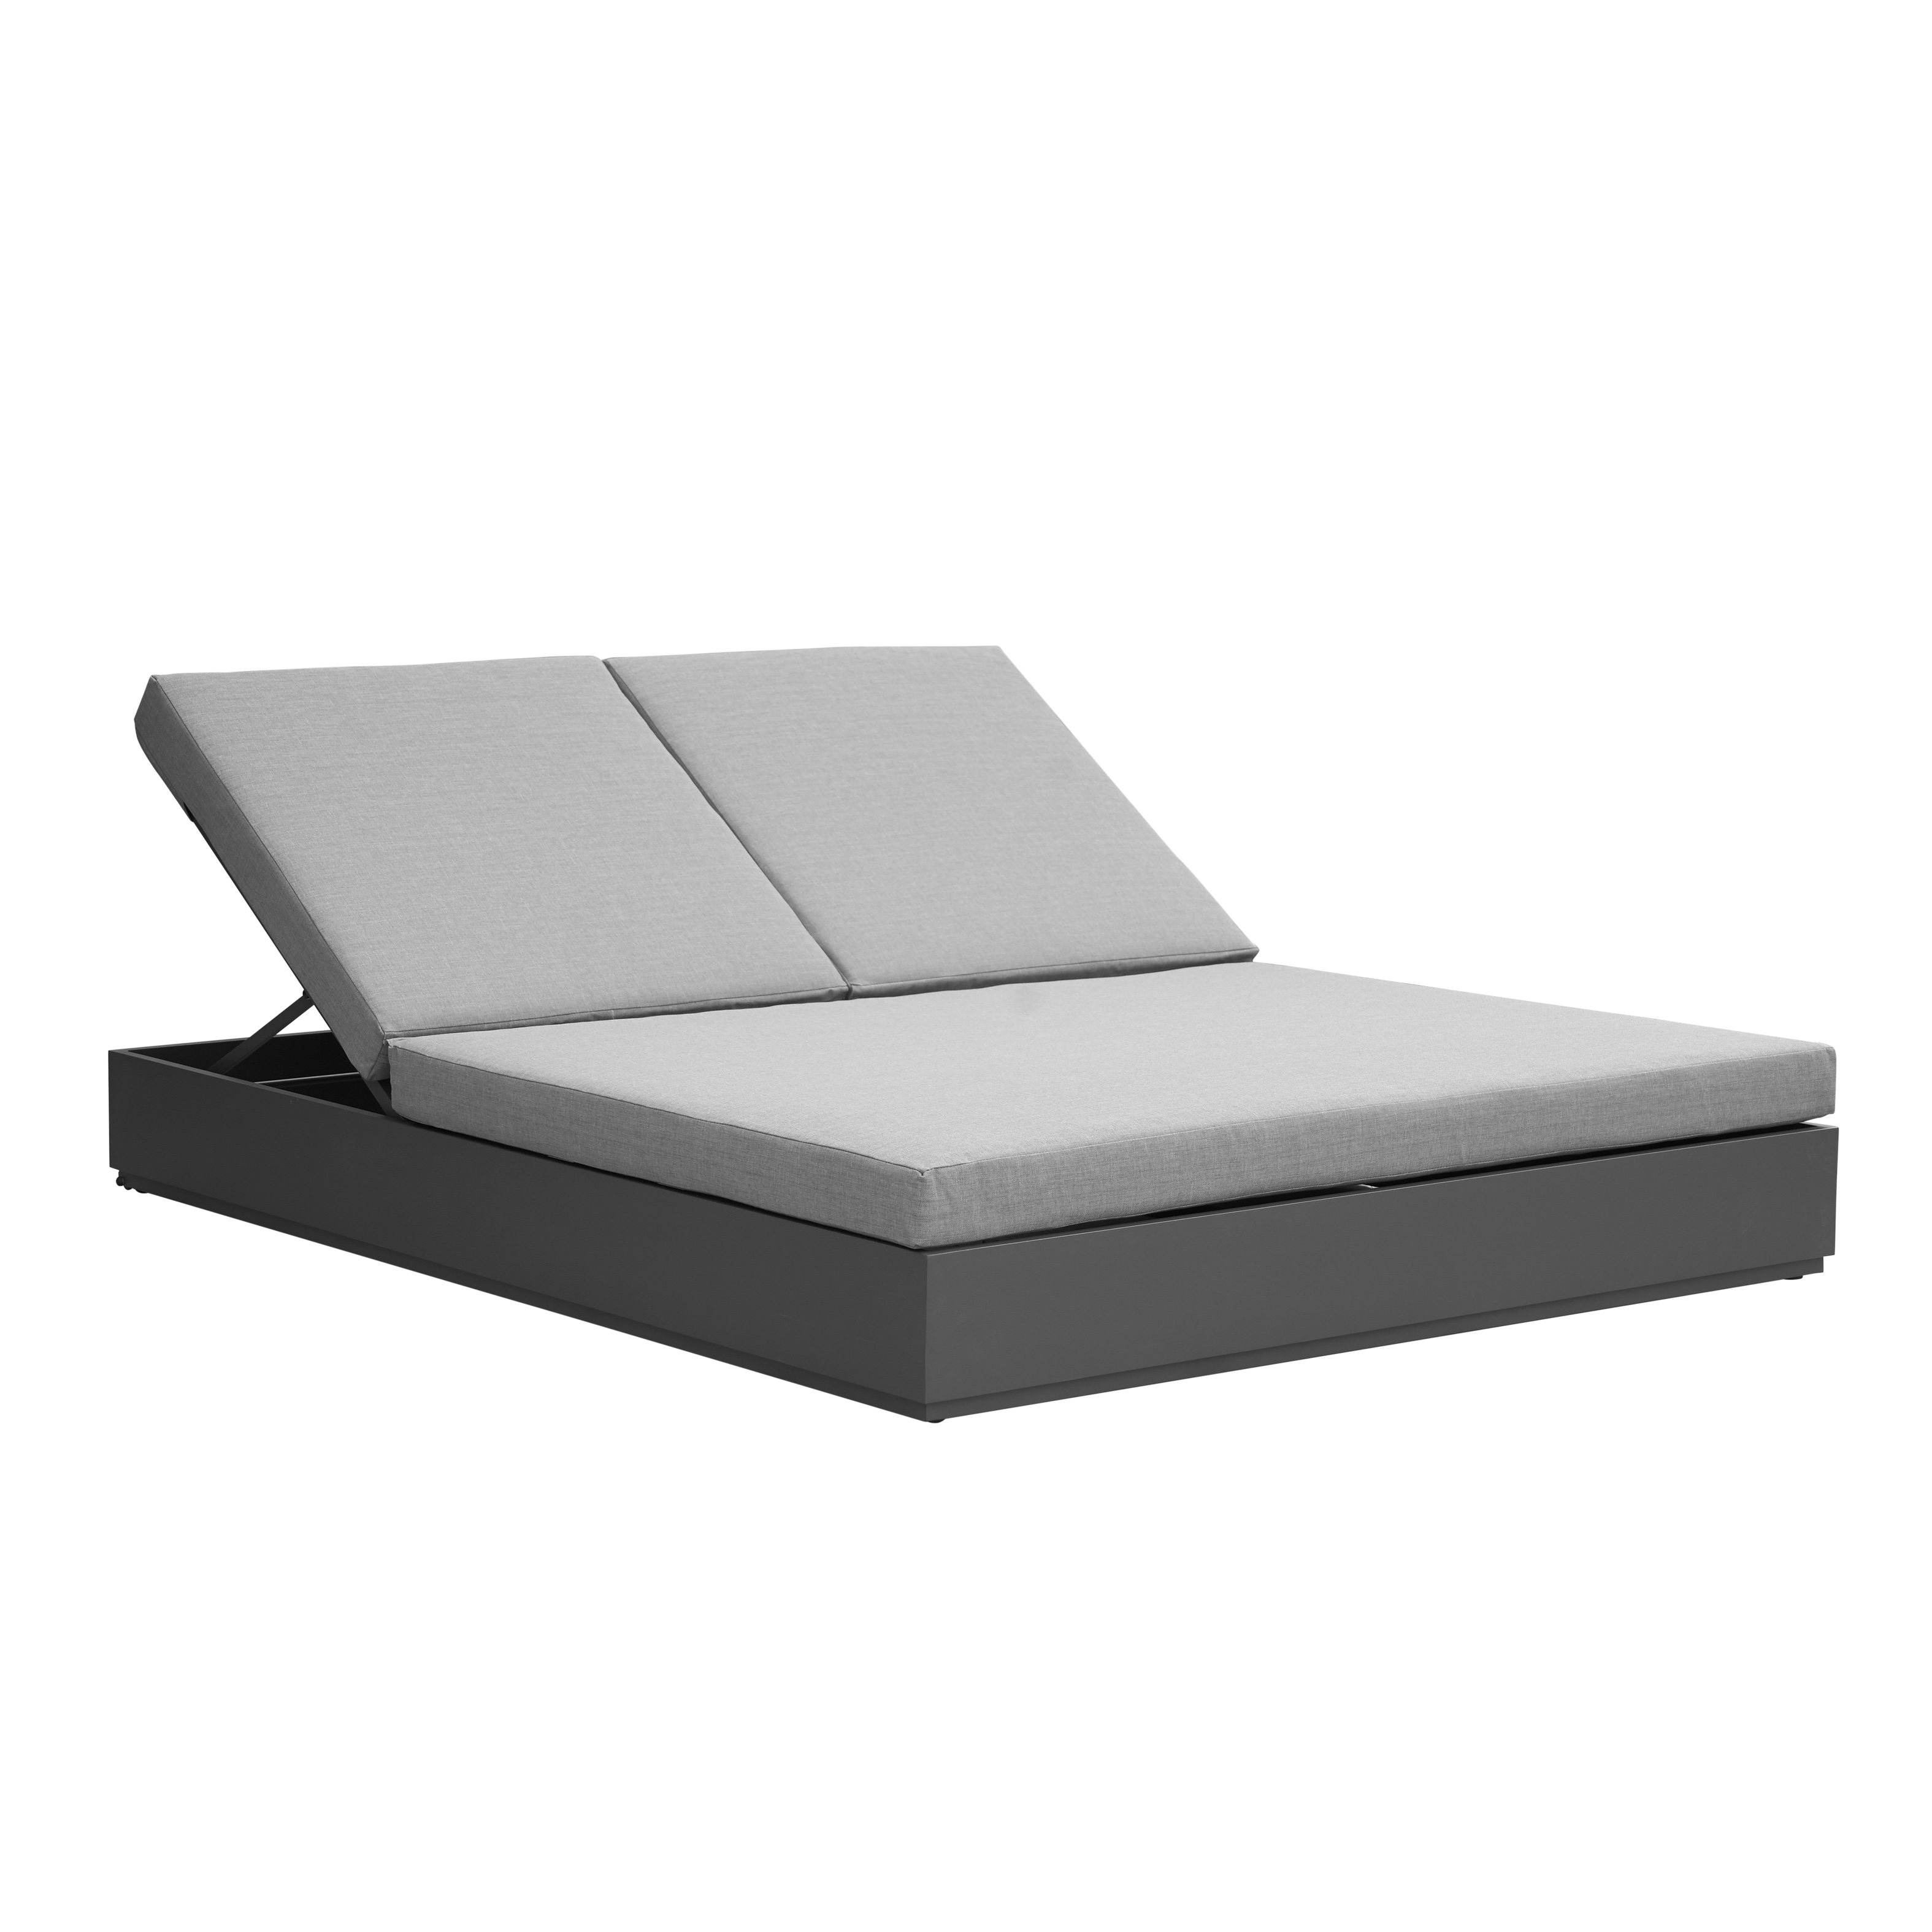 #Aluminium-Tagesbett für den Außenbereich mit Kissen #Gartenmöbel #Bistromöbel #Resortmöbel